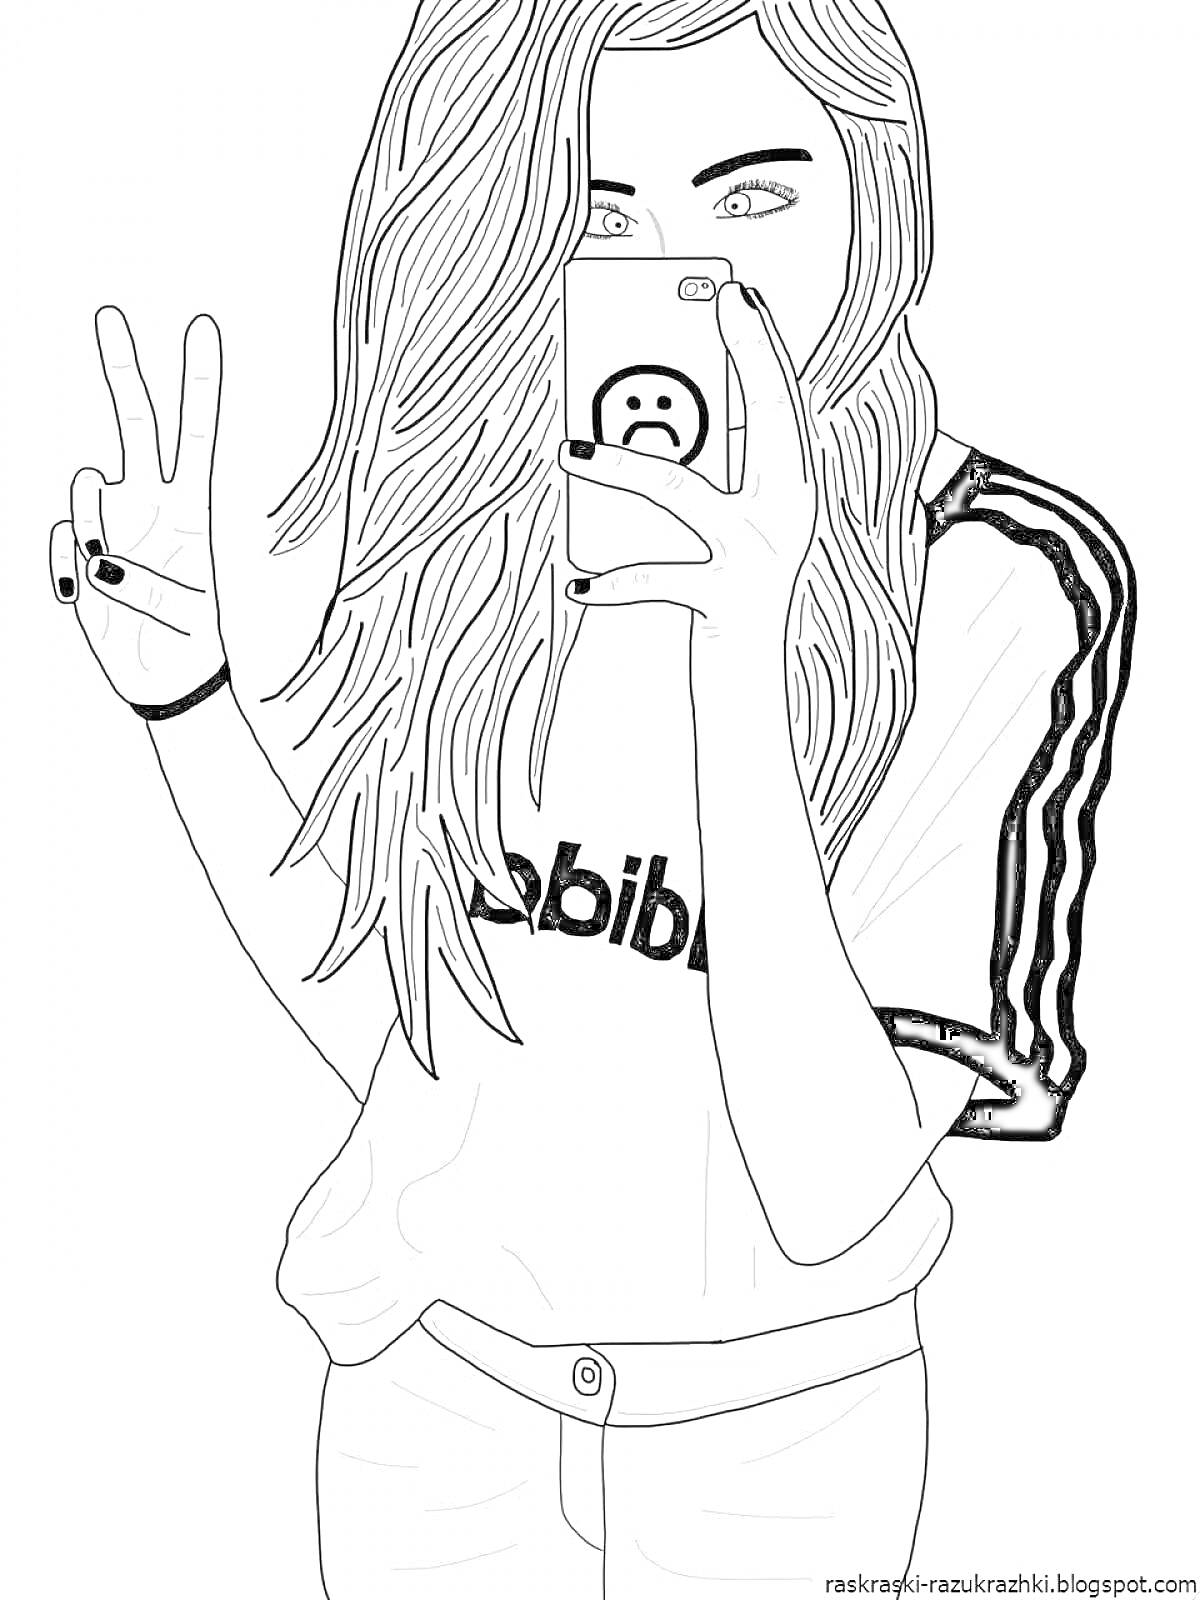 Девушка с длинными волосами в футболке Adidas делает селфи с телефоном, показывая знак мира